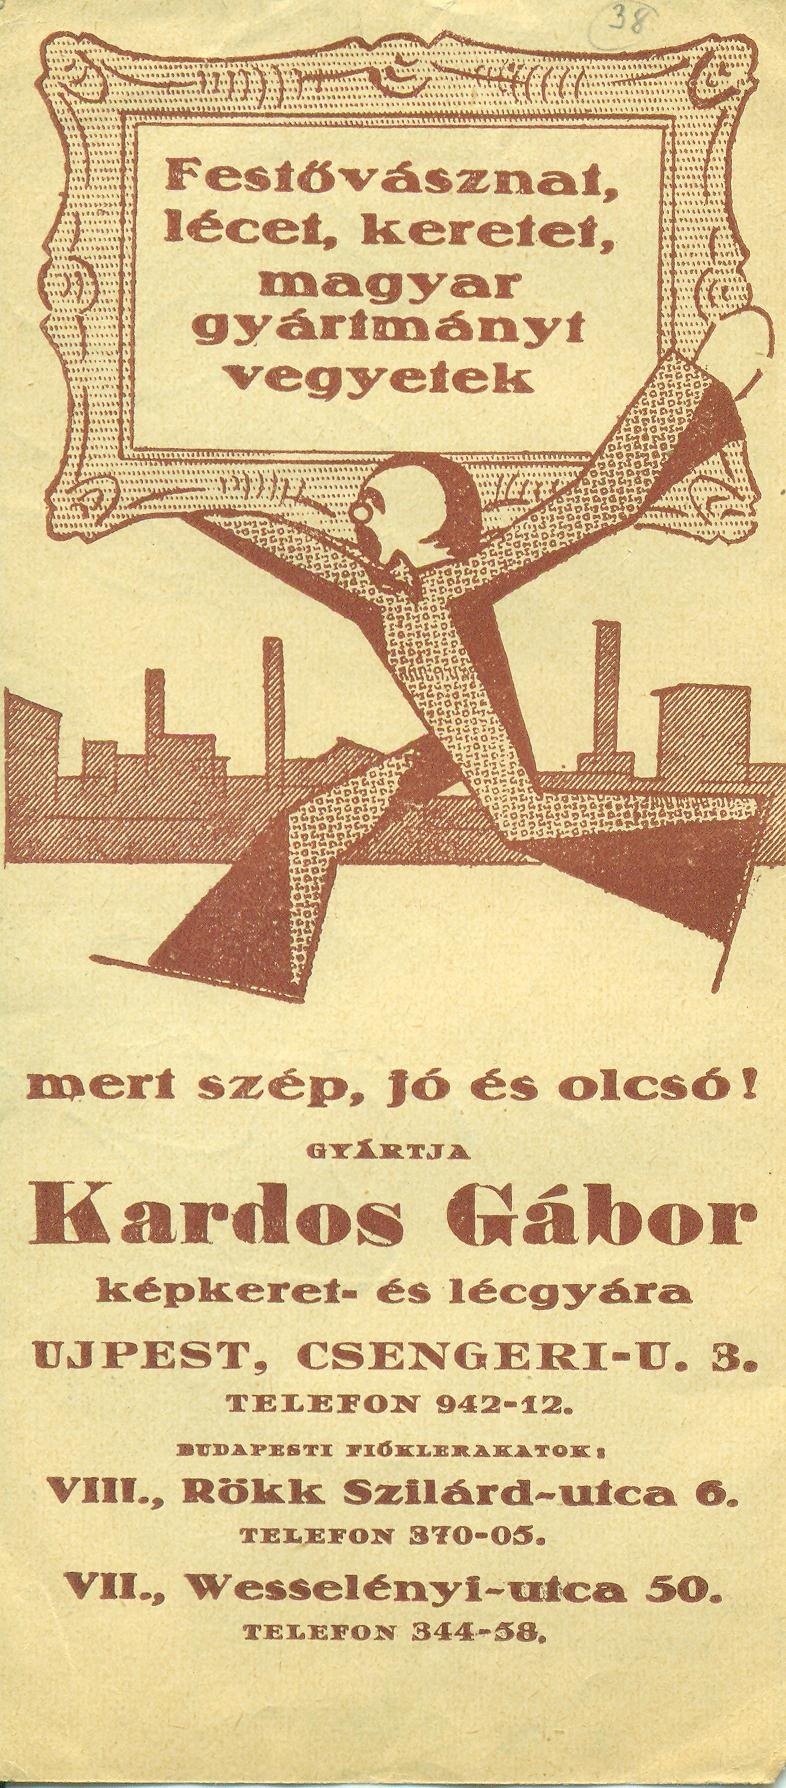 Kardos Gábor képkeret- és lécgyára (Magyar Kereskedelmi és Vendéglátóipari Múzeum CC BY-NC-SA)